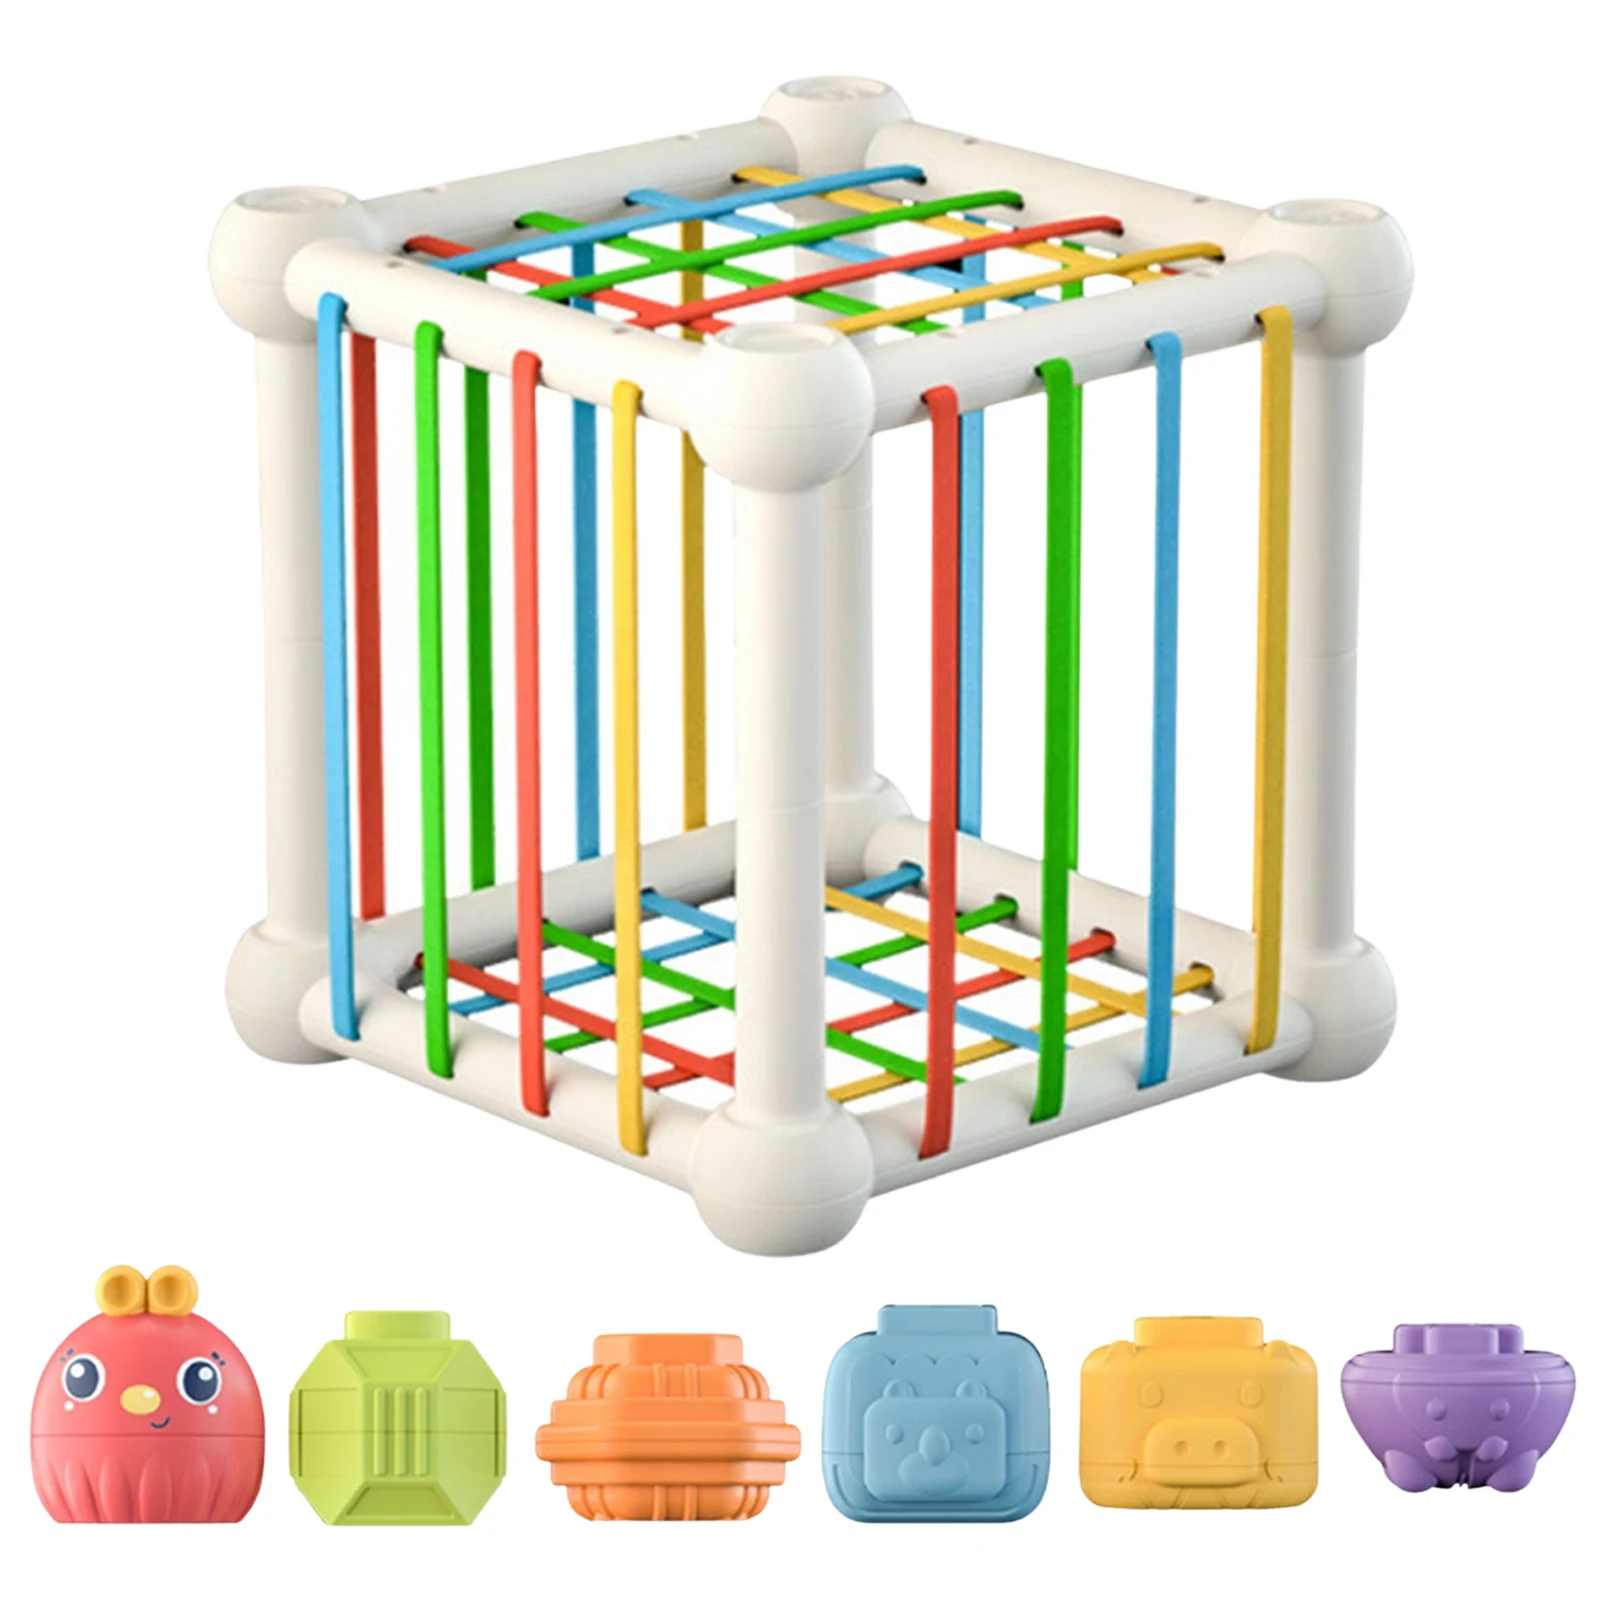 

Сортировочные игрушки в форме ребенка, цветные текстурированные сортировочные игры, Обучающие игрушки Монтессори для распознавания формы ...